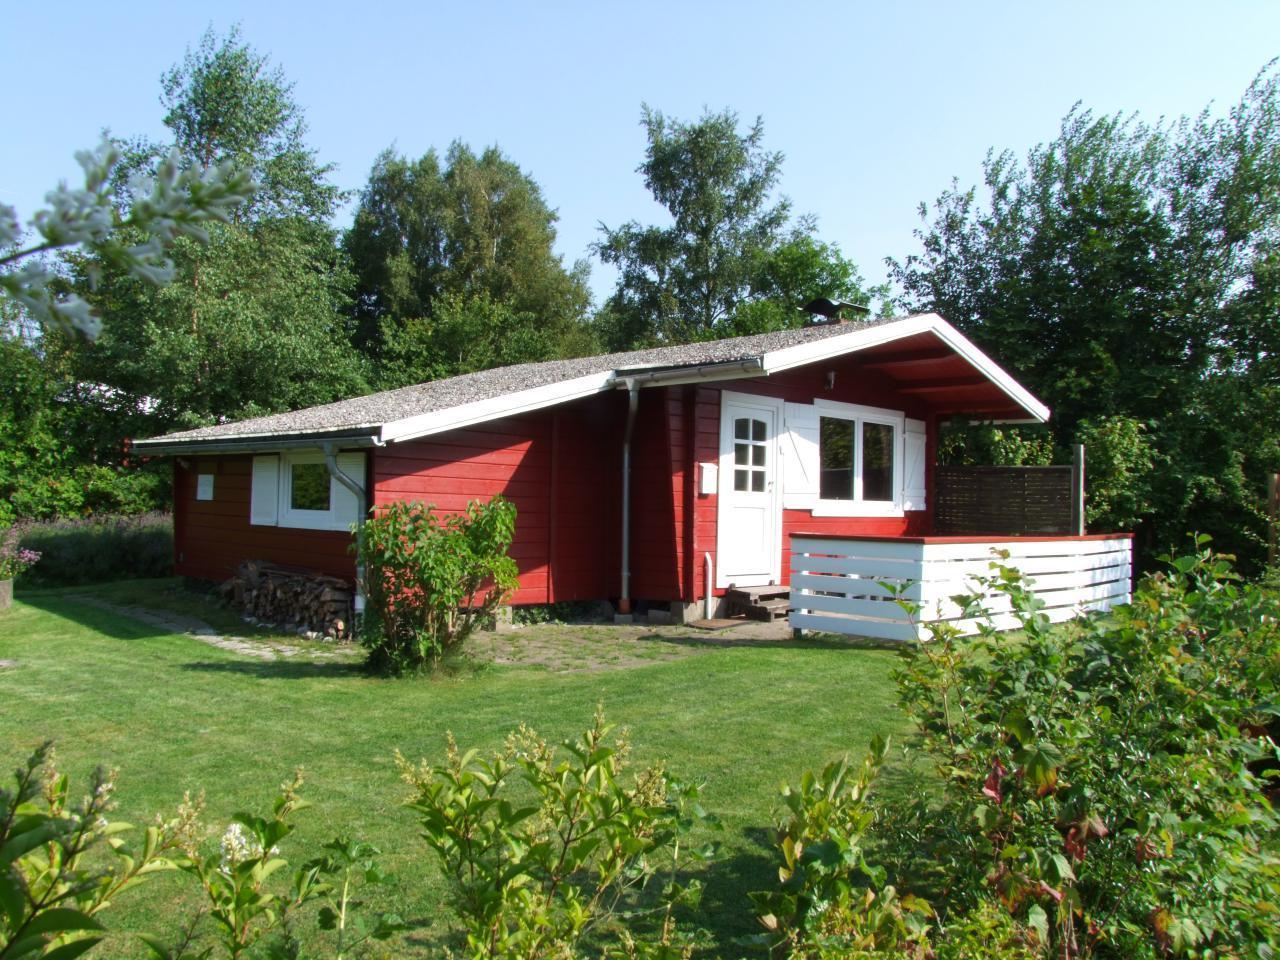 dasMeerchen - Cottage am Fjord